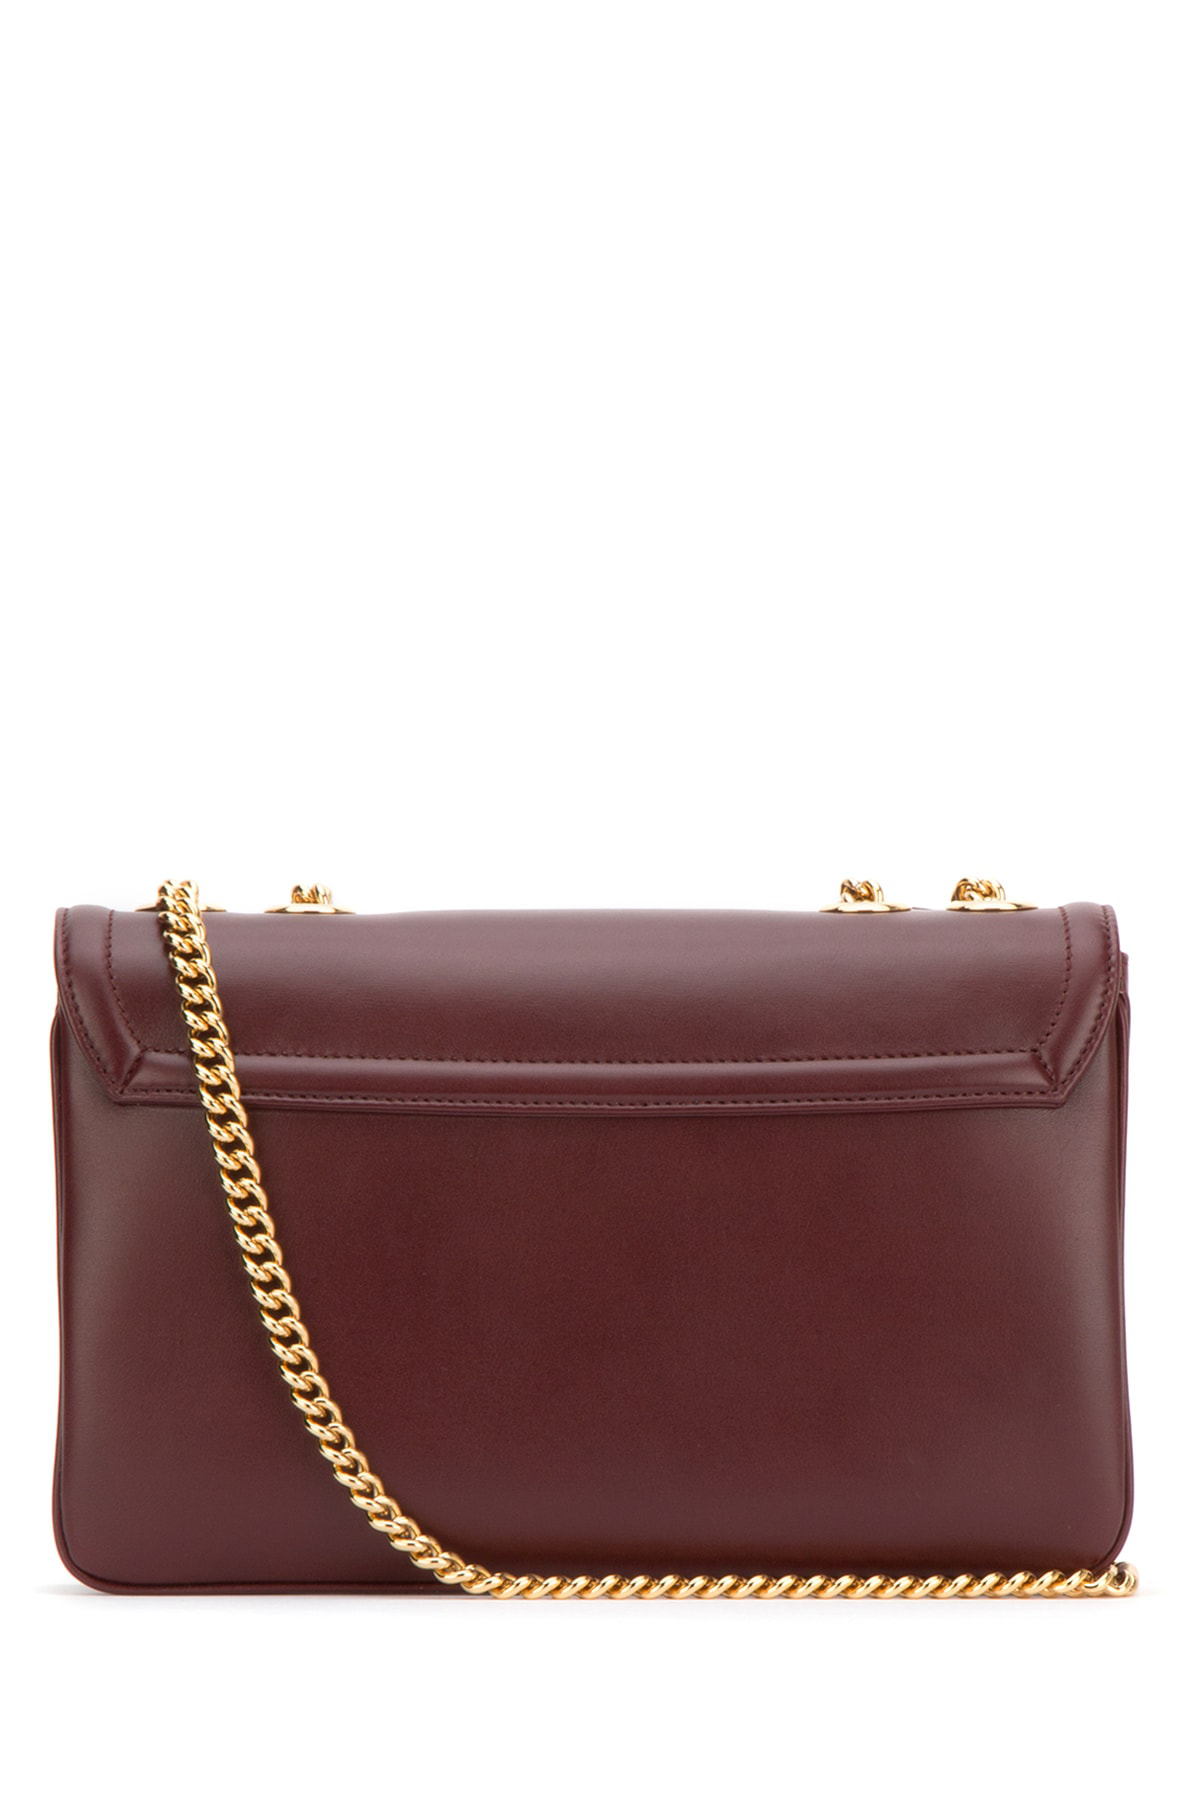 Gucci Rajah Medium Embellished Leather Shoulder Bag In Bordeaux | ModeSens